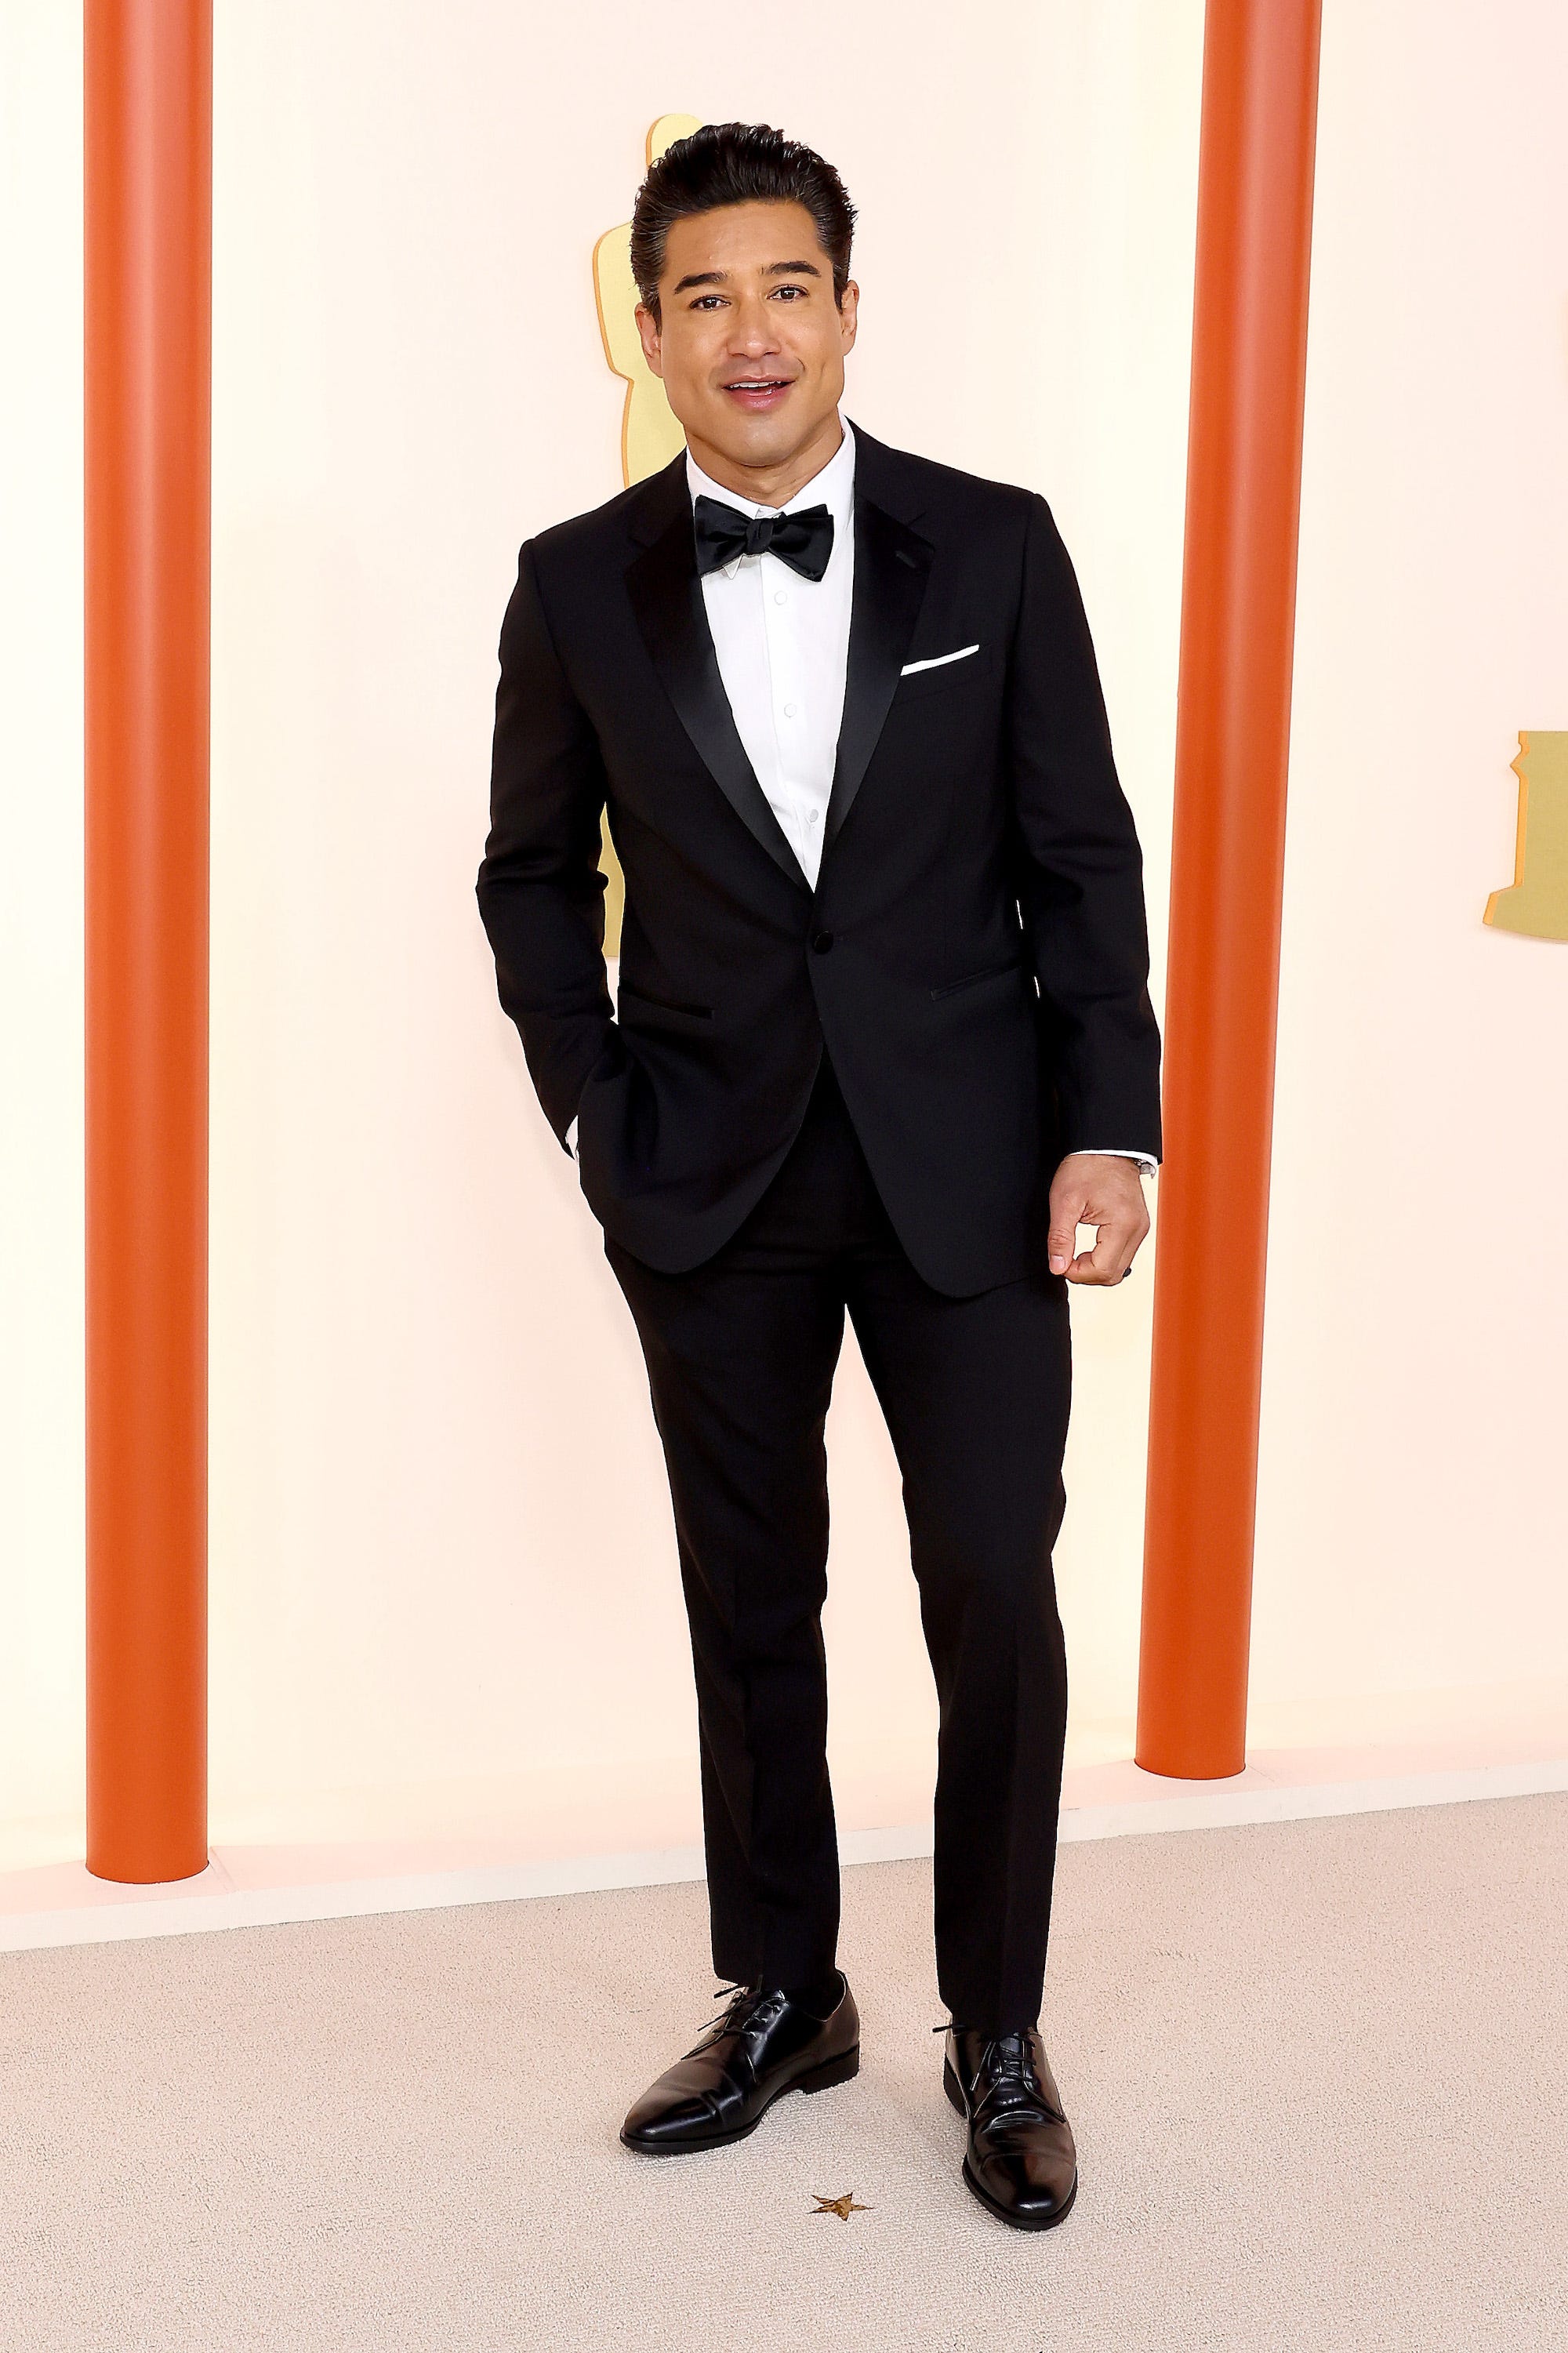 Mario Lopez nimmt an den Academy Awards 2023 teil.